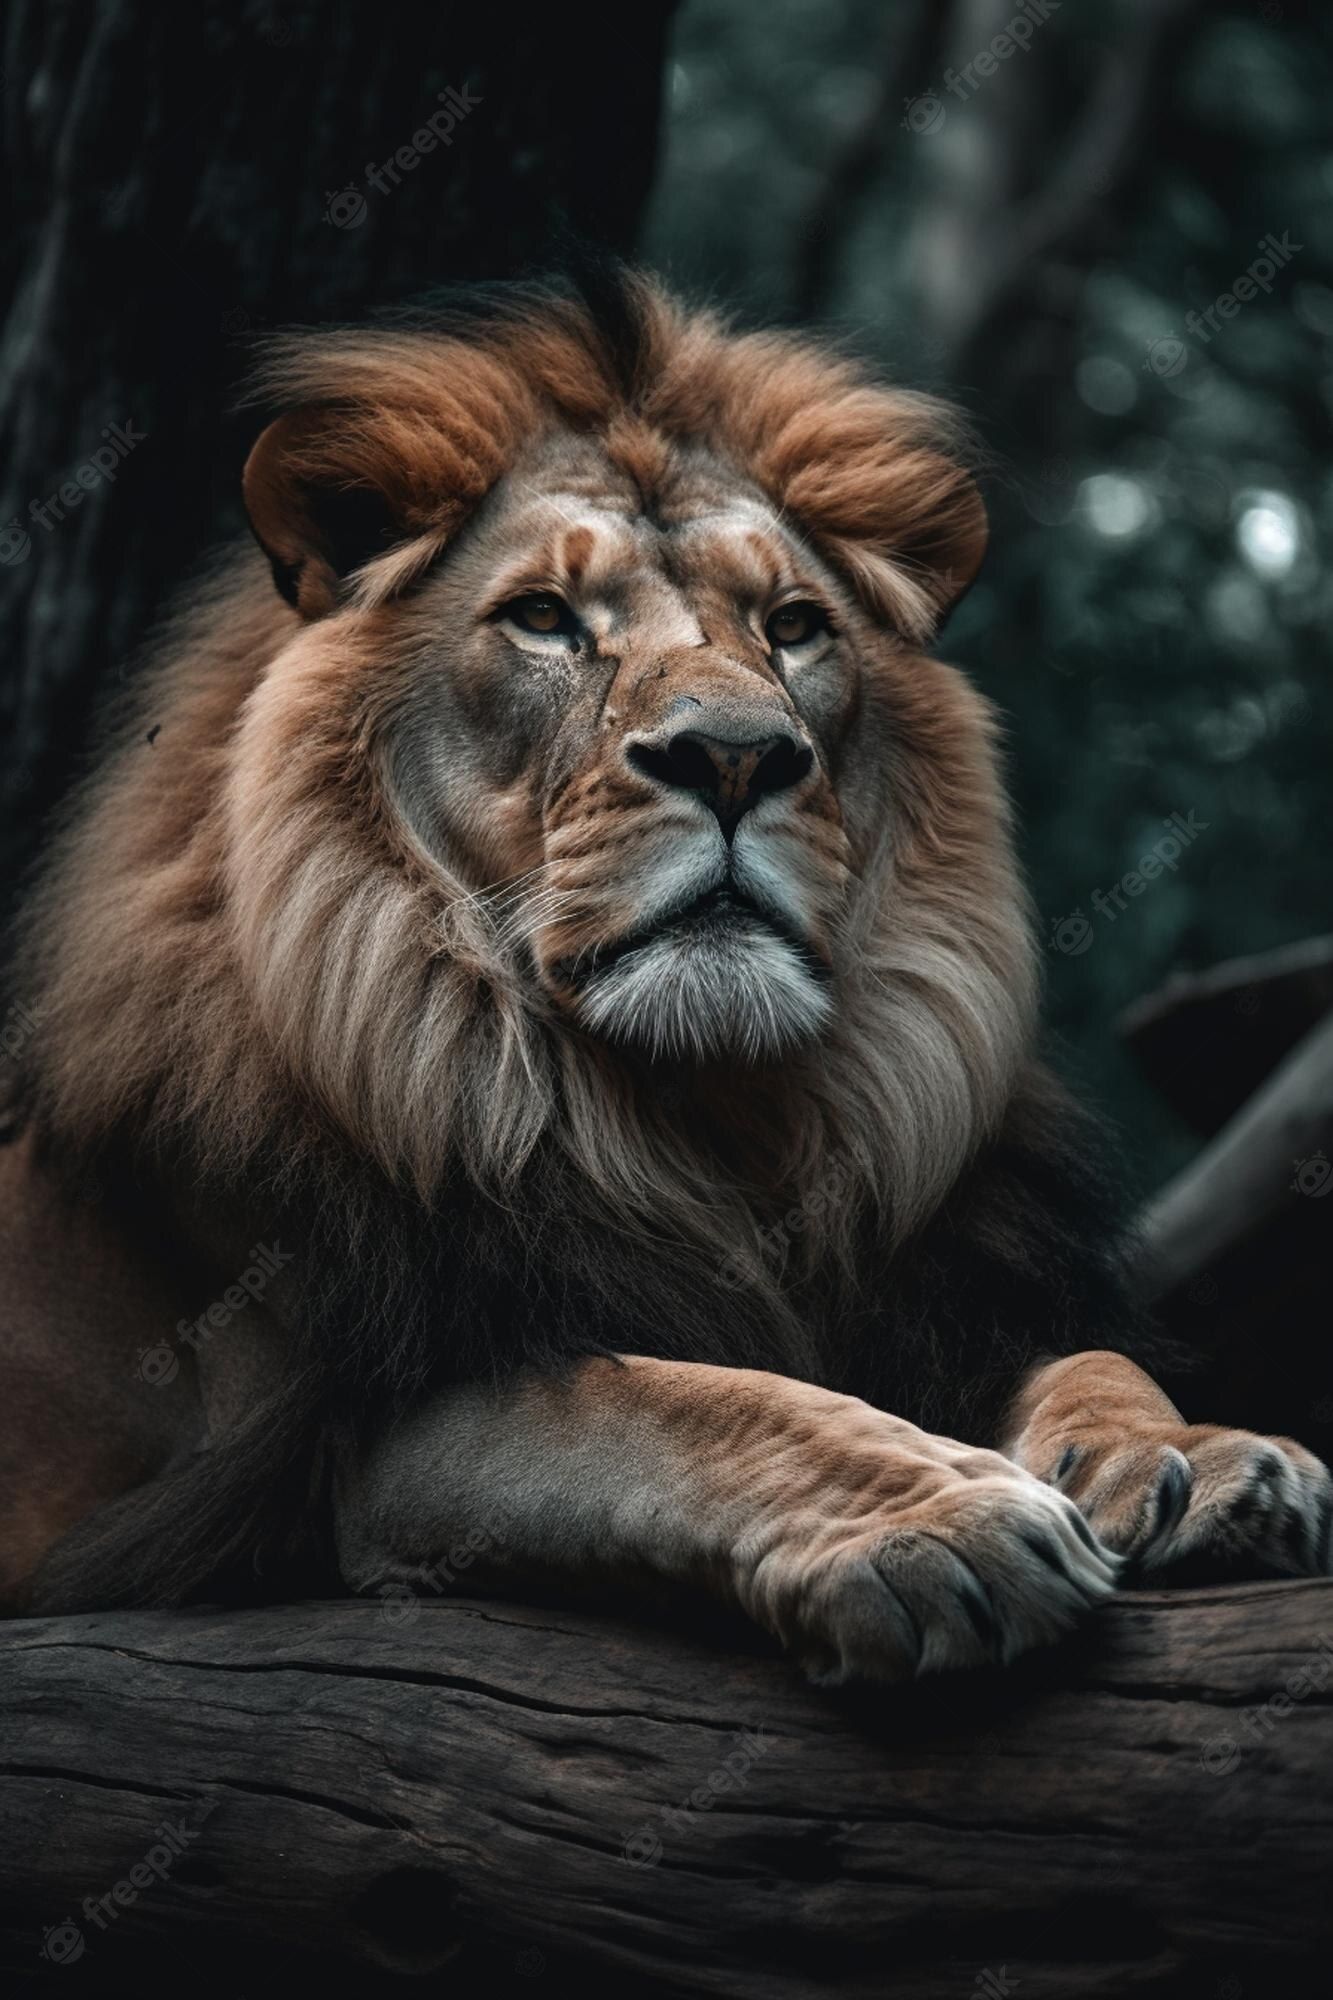  Löwen Hintergrundbild 1333x2000. Ein löwe in einem dunklen wald